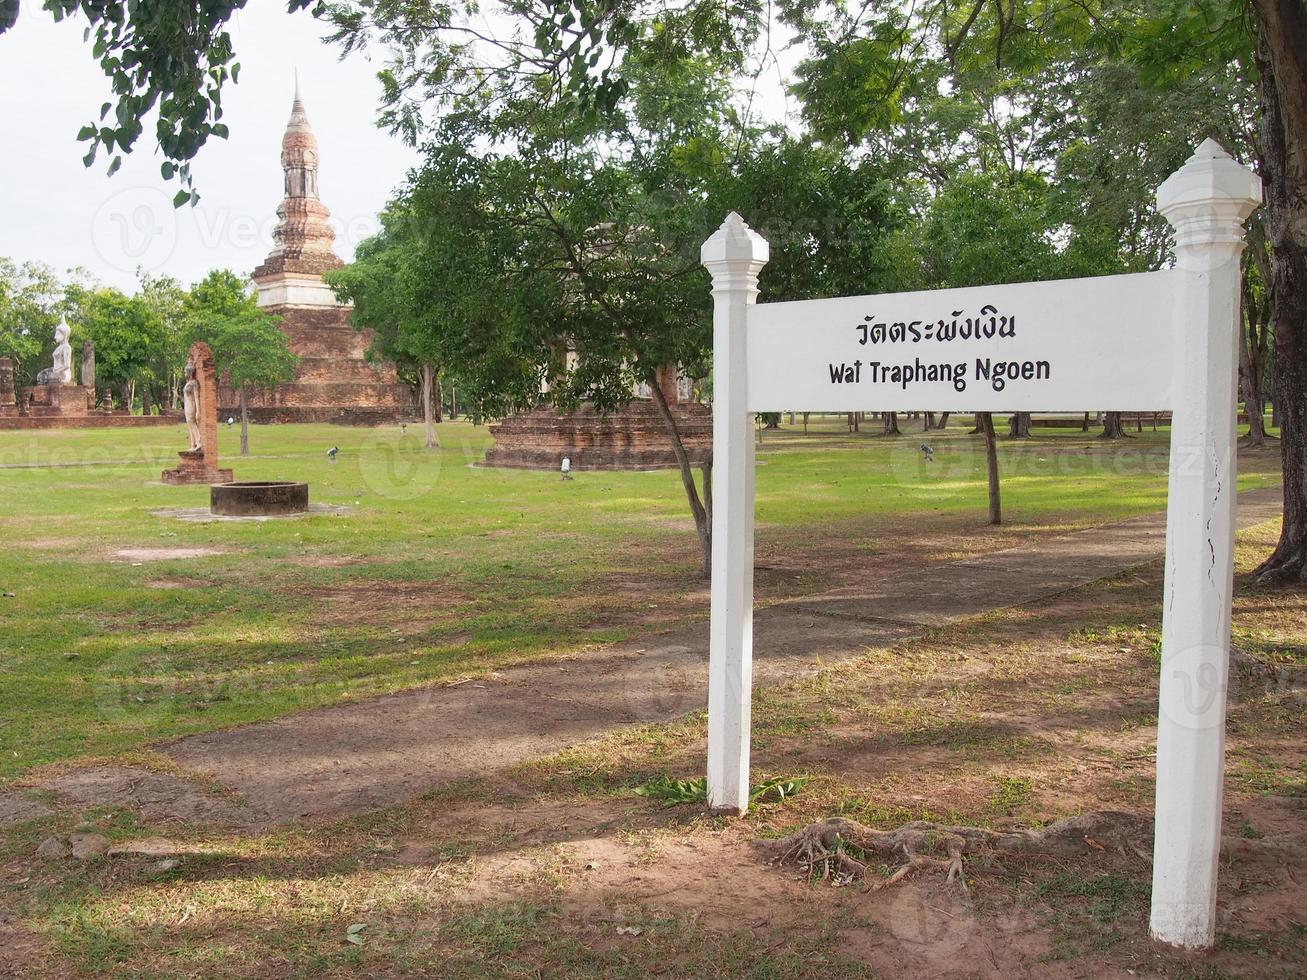 wat tra phang ngoen tempel historischer park von sukhothai befindet sich auf der westseite von wat mahathat 300 meter vom mahathat-tempel entfernt innerhalb des welterbes des historischen parks von sukhothai. foto